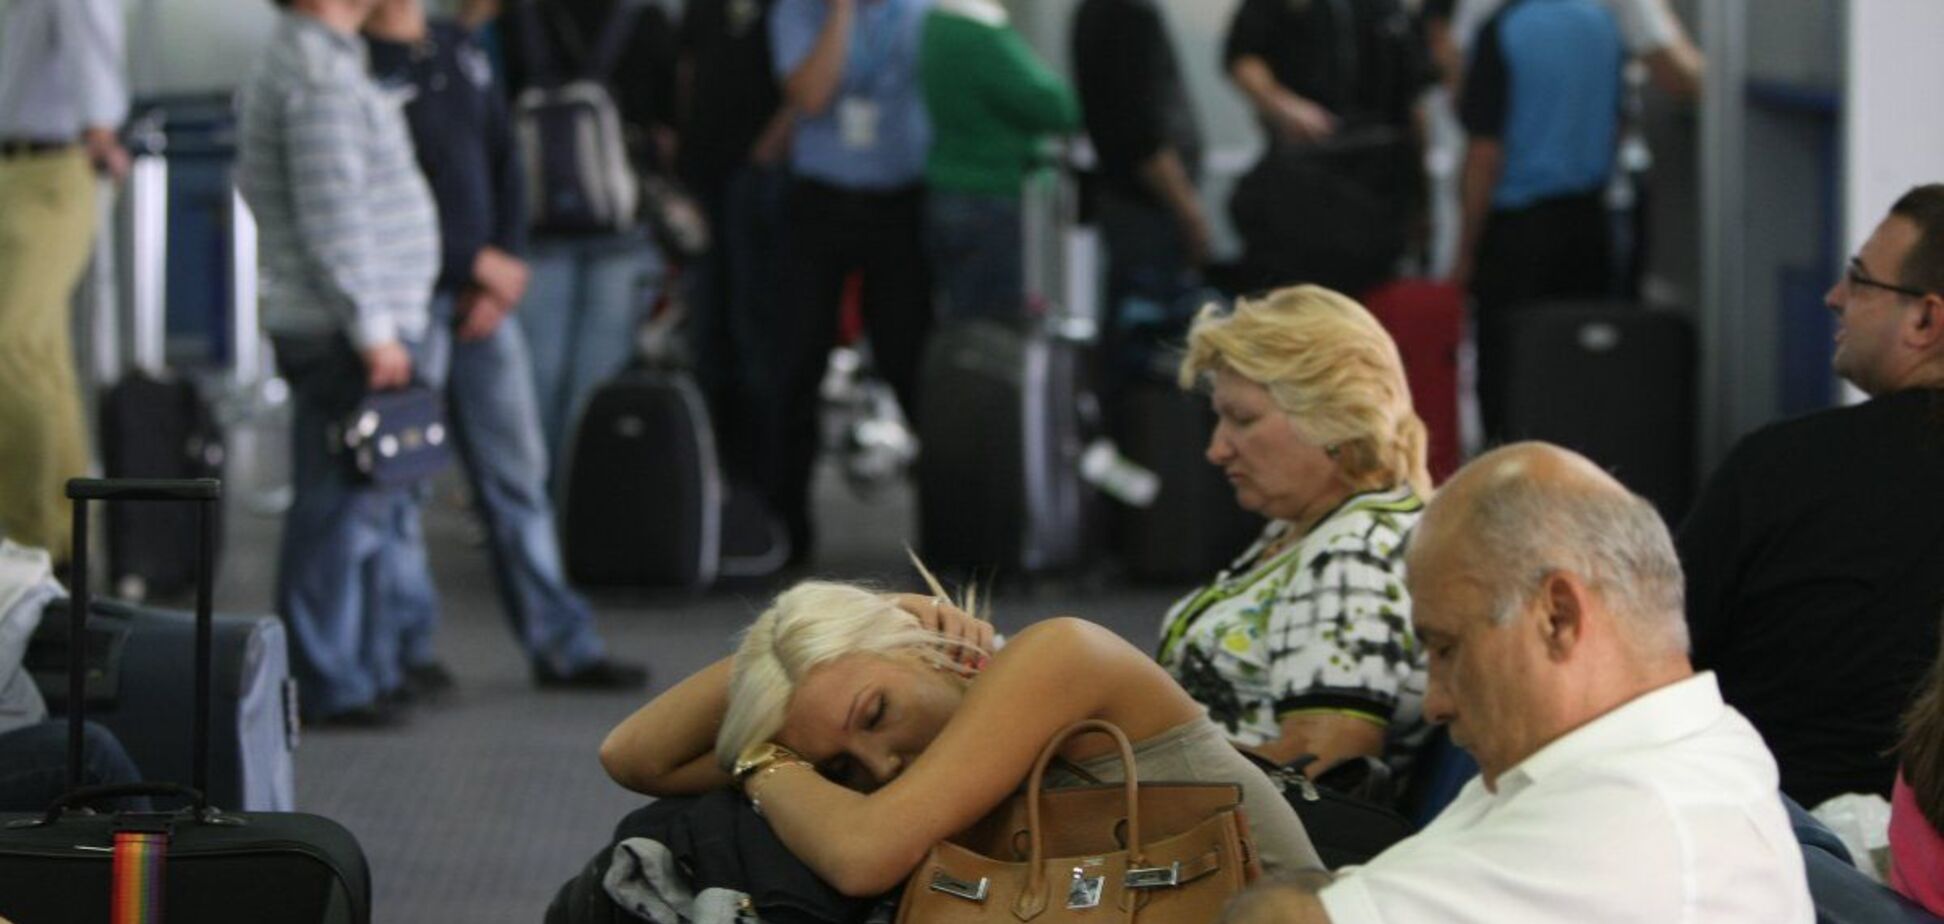 Другу добу на валізах: у Львові сталася нова НП з туристами